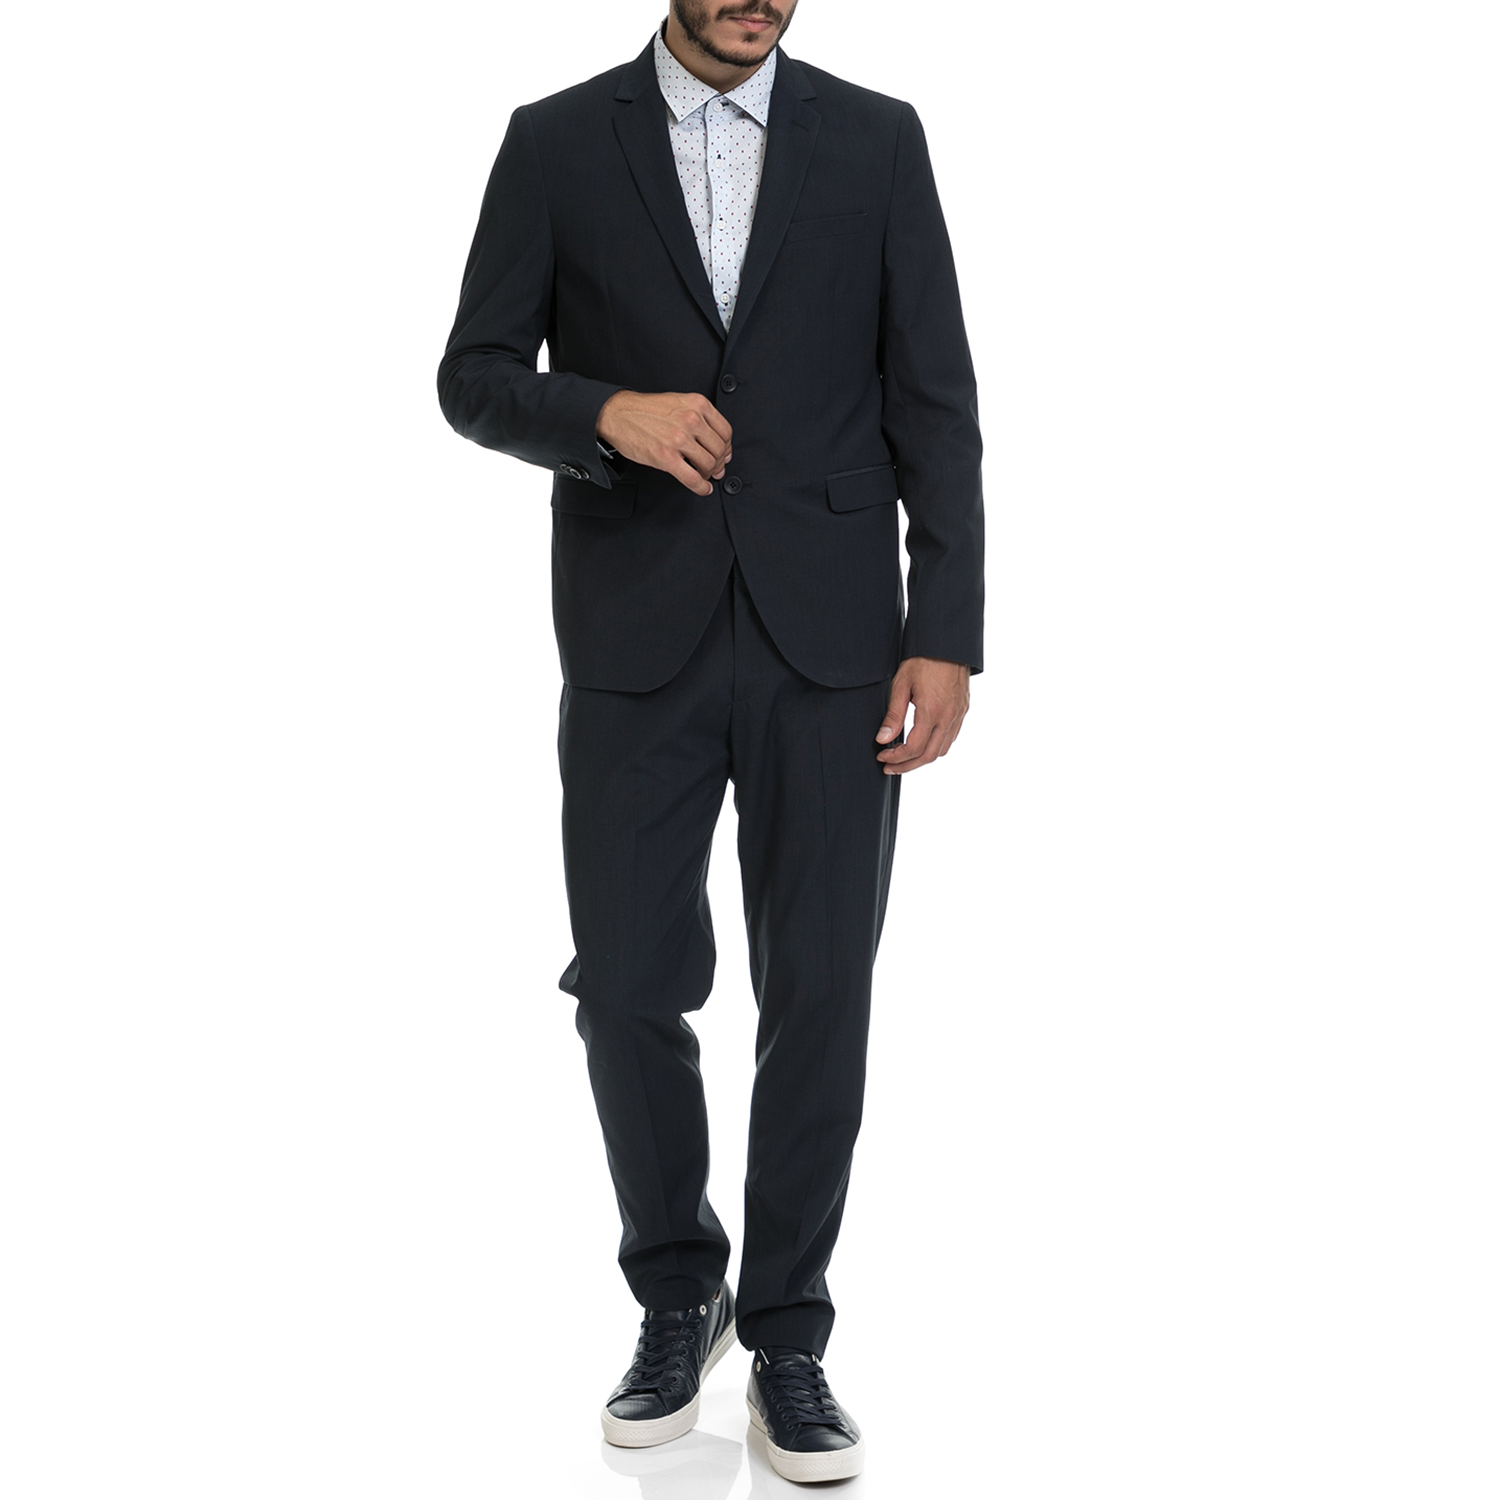 Ανδρικά/Ρούχα/Πανωφόρια/Σακάκια SSEINSE - Ανδρικό κοστούμι ABITO SSEINSE μπλε